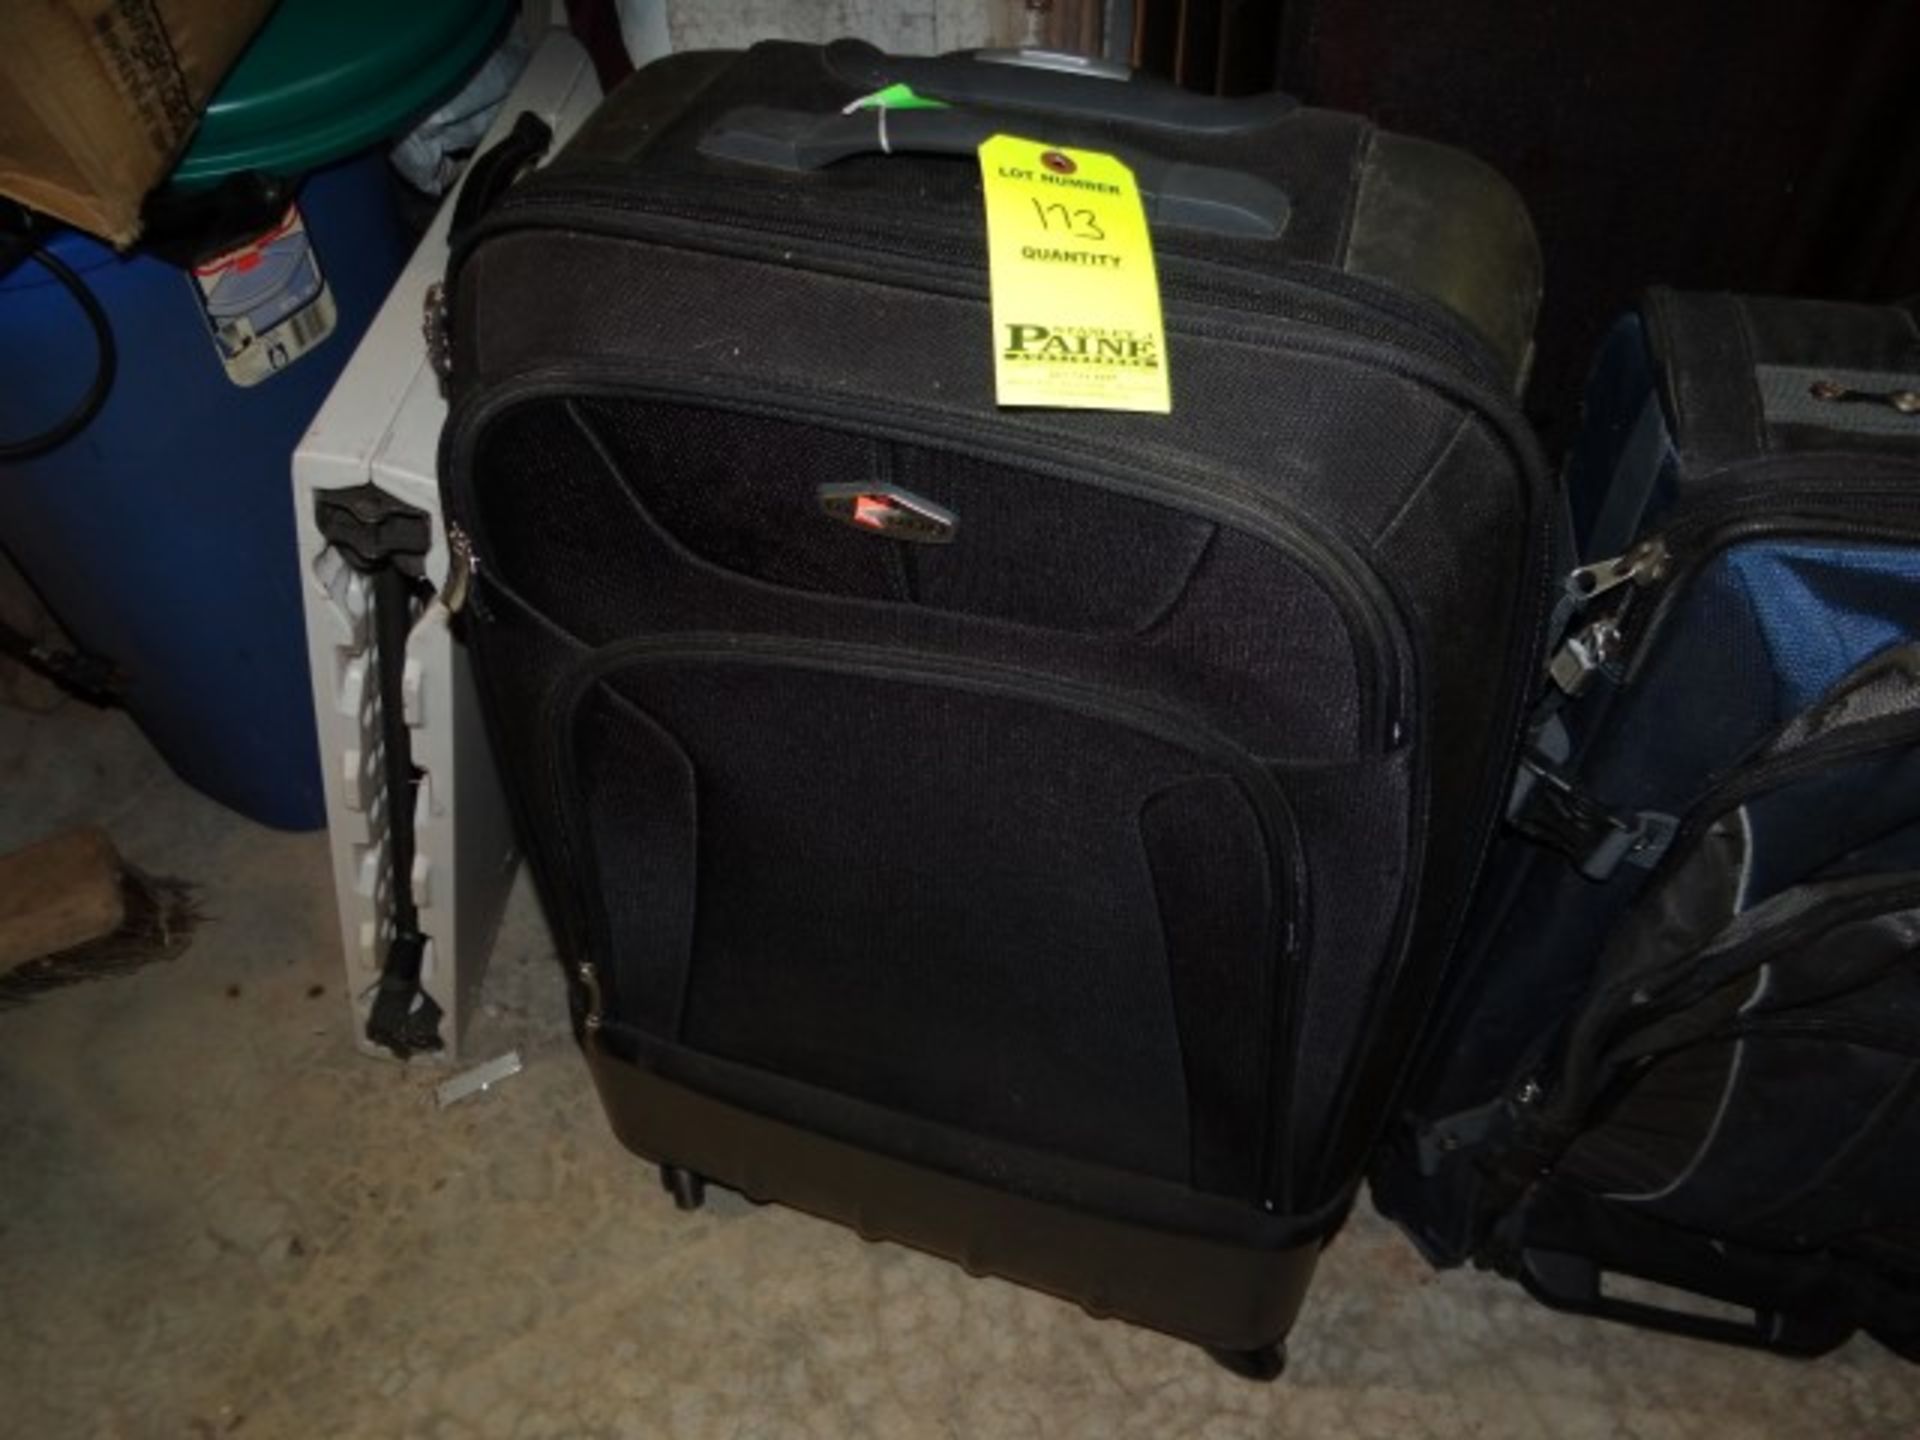 (1) Lugage Bag